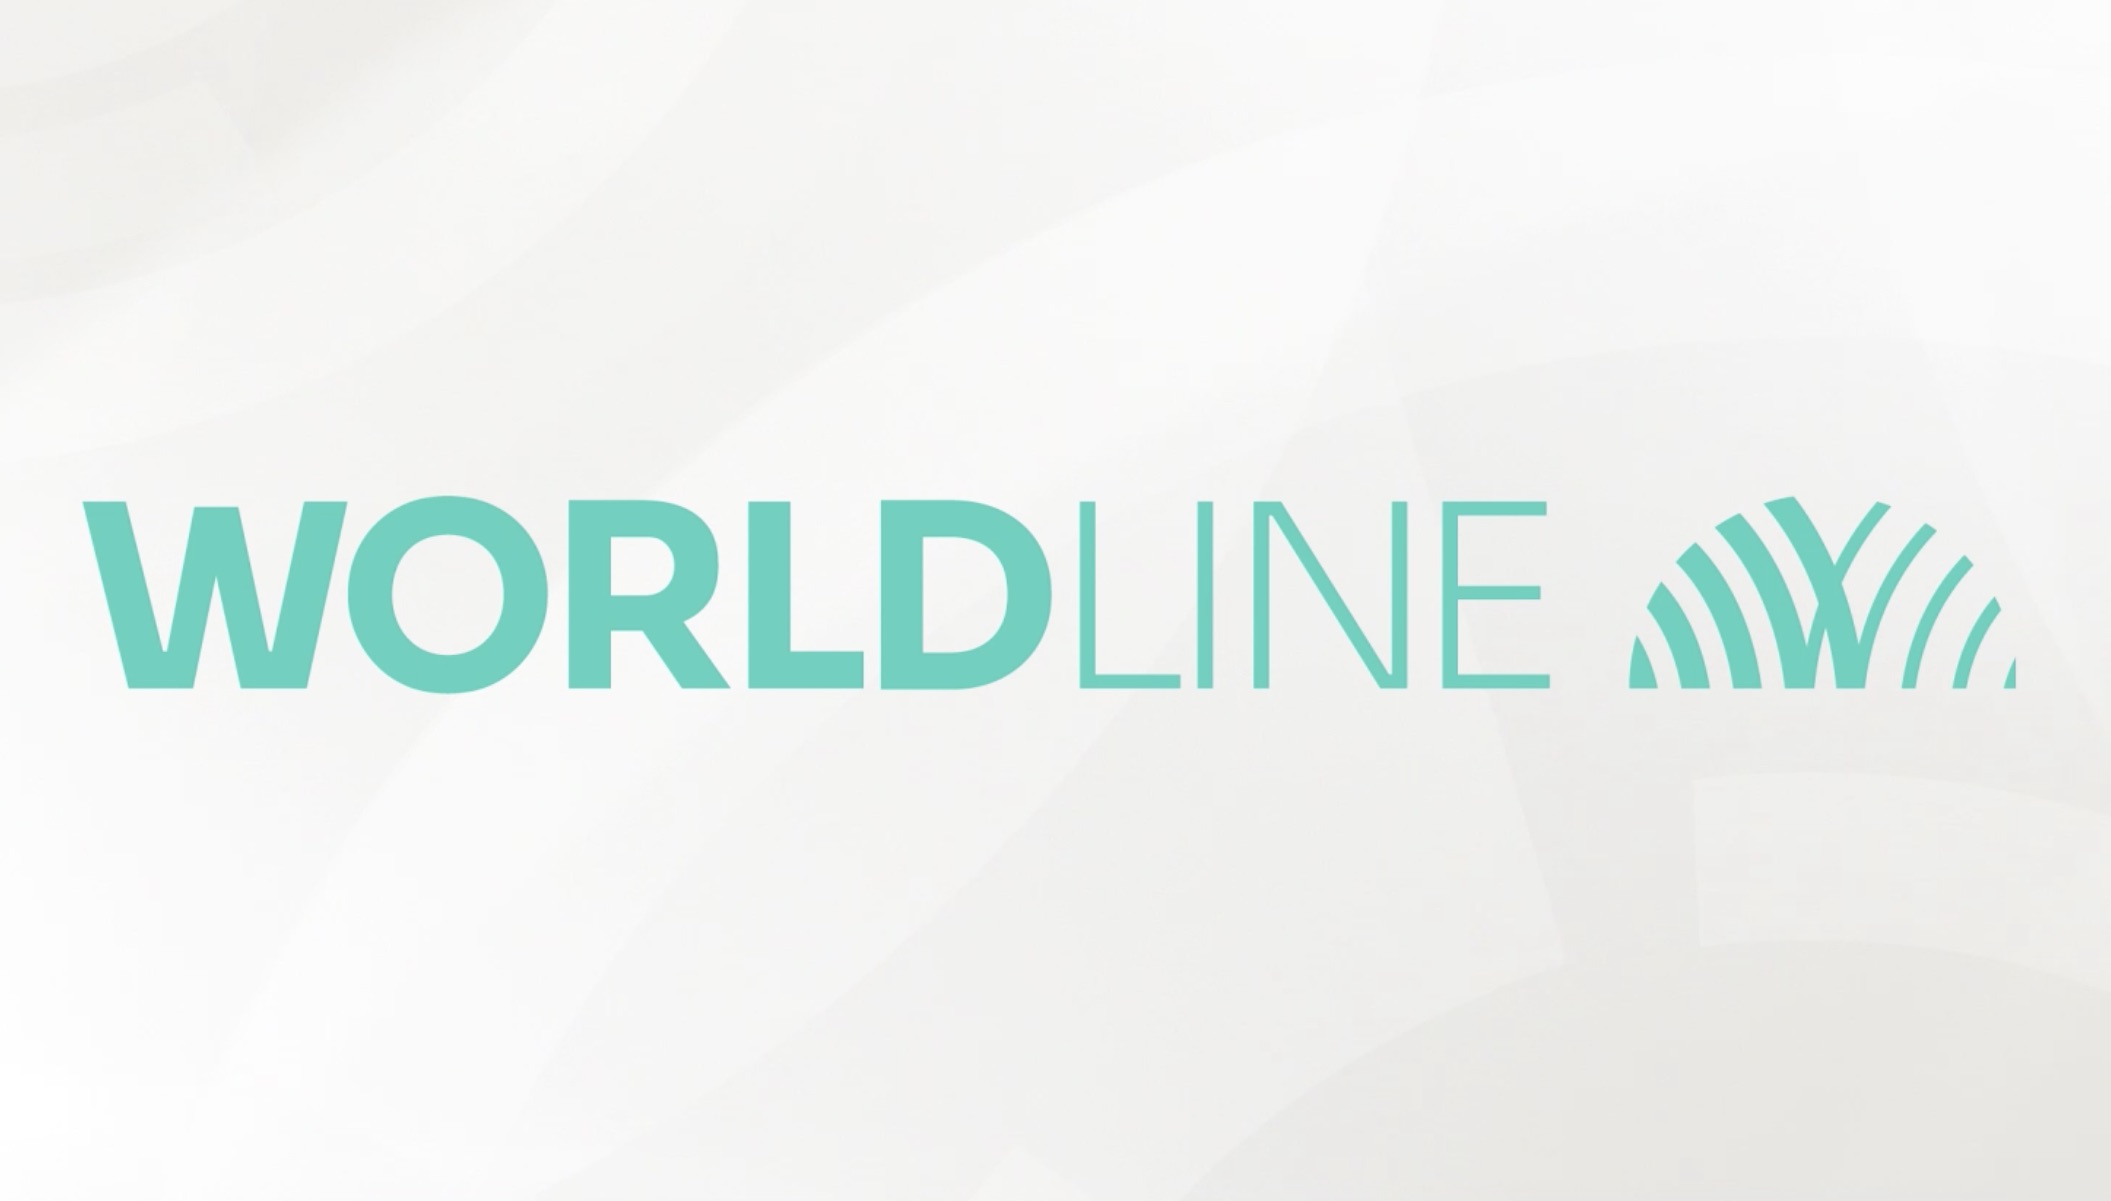 worldline_new